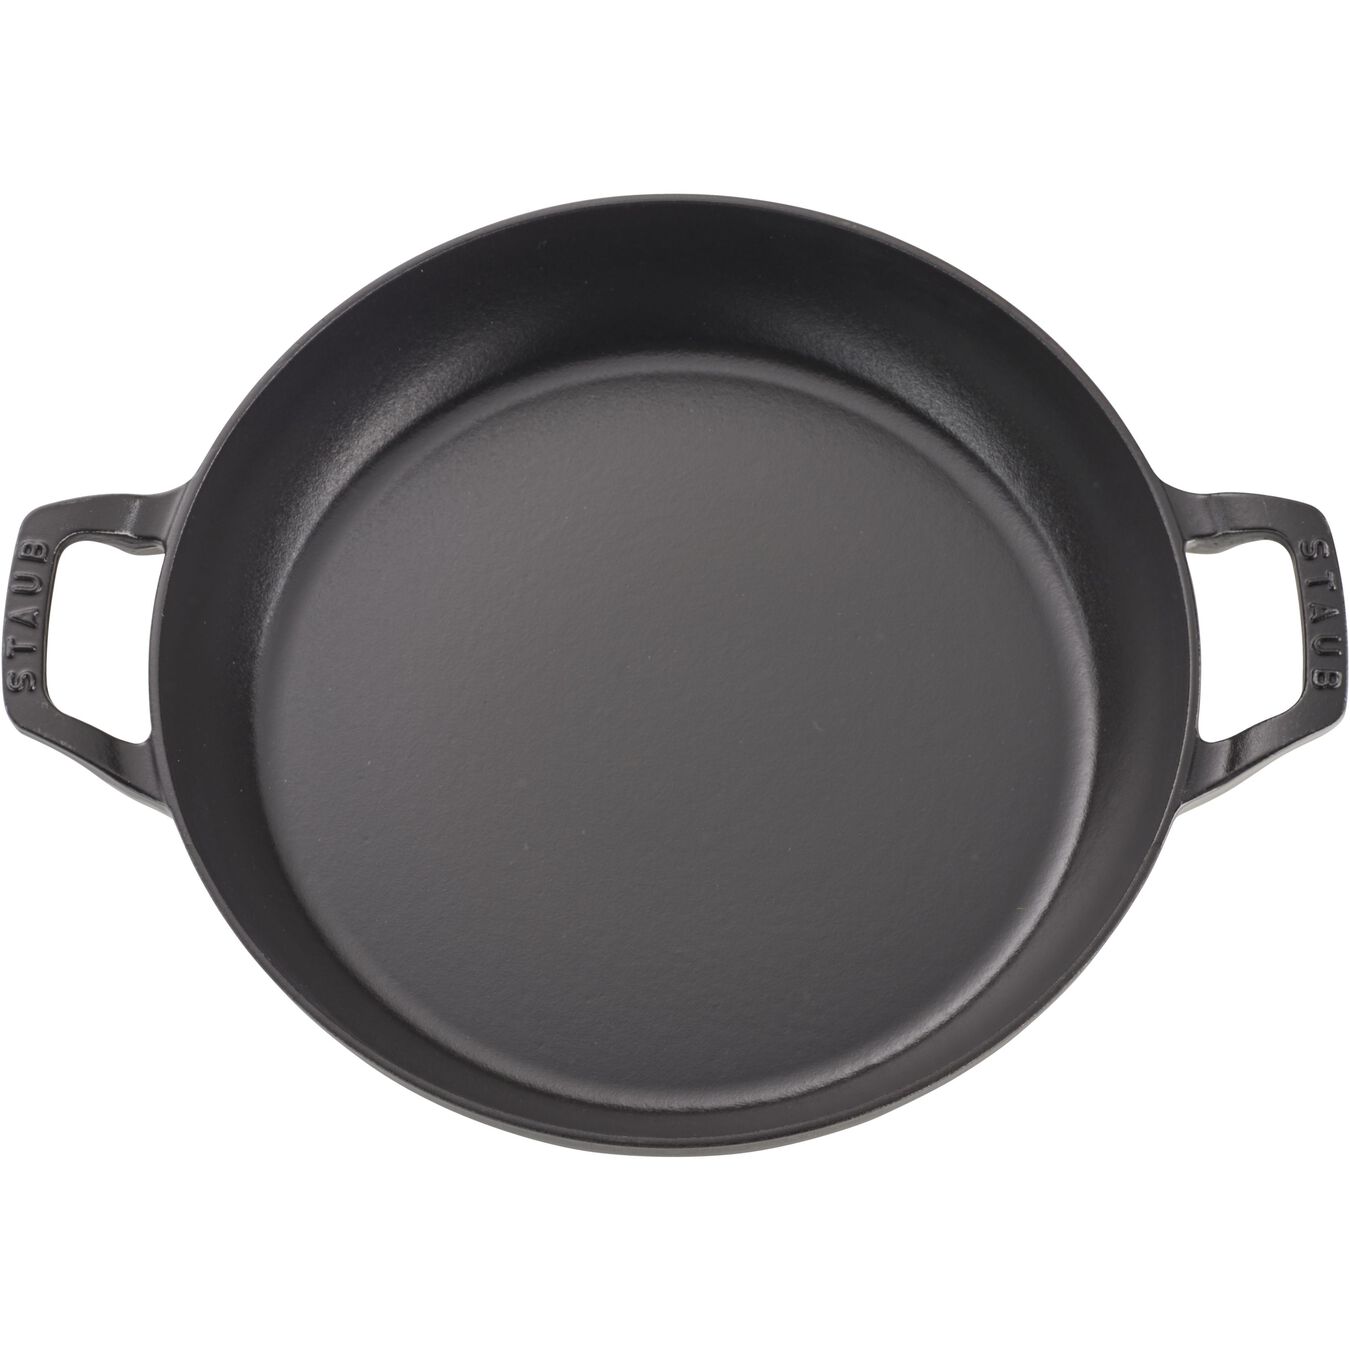 3.25 l cast iron round Saute pan, black,,large 2